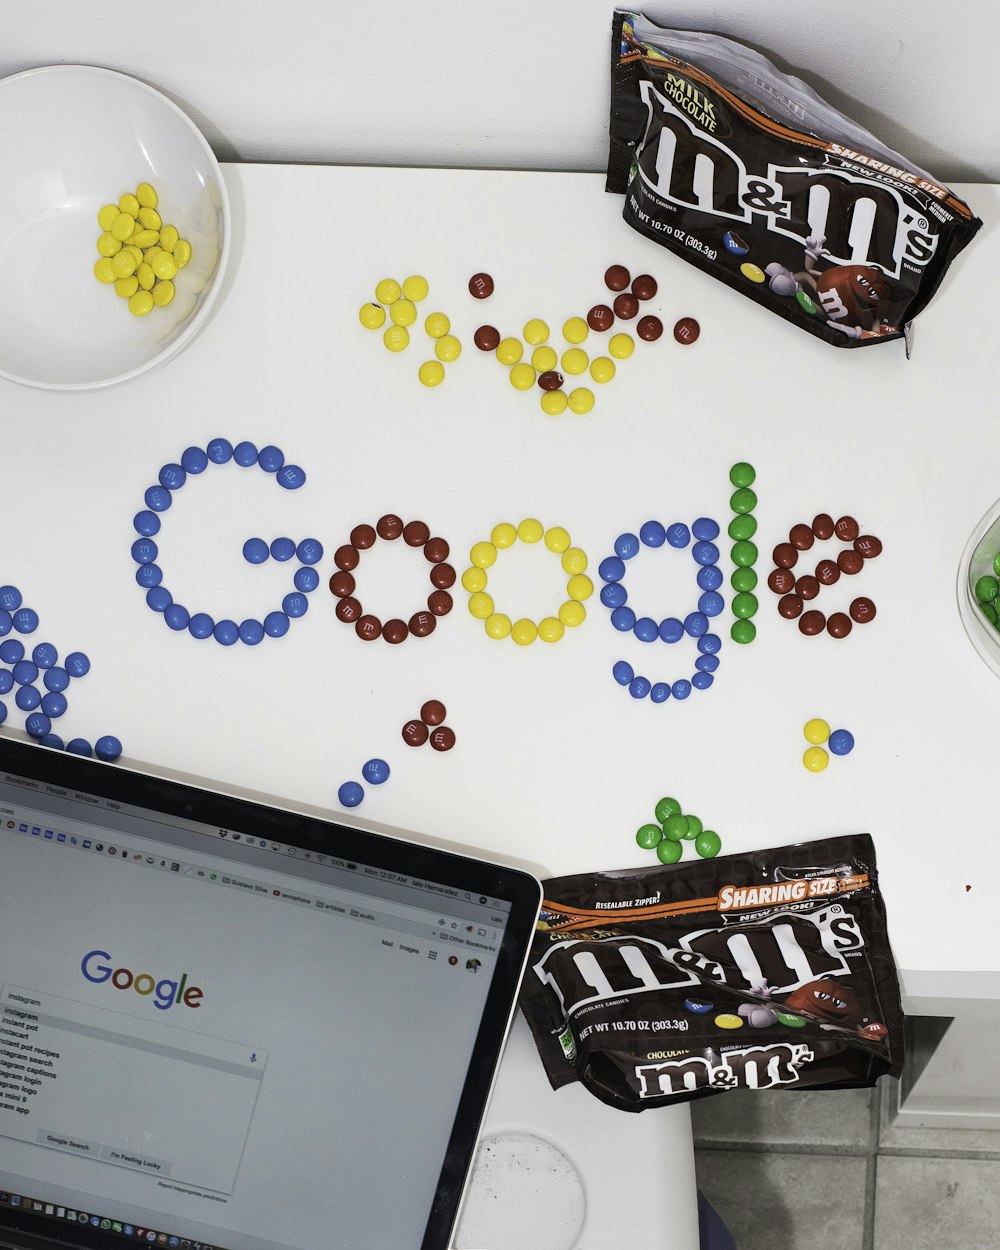 foto de M&M formando doces de chocolate do Google na mesa